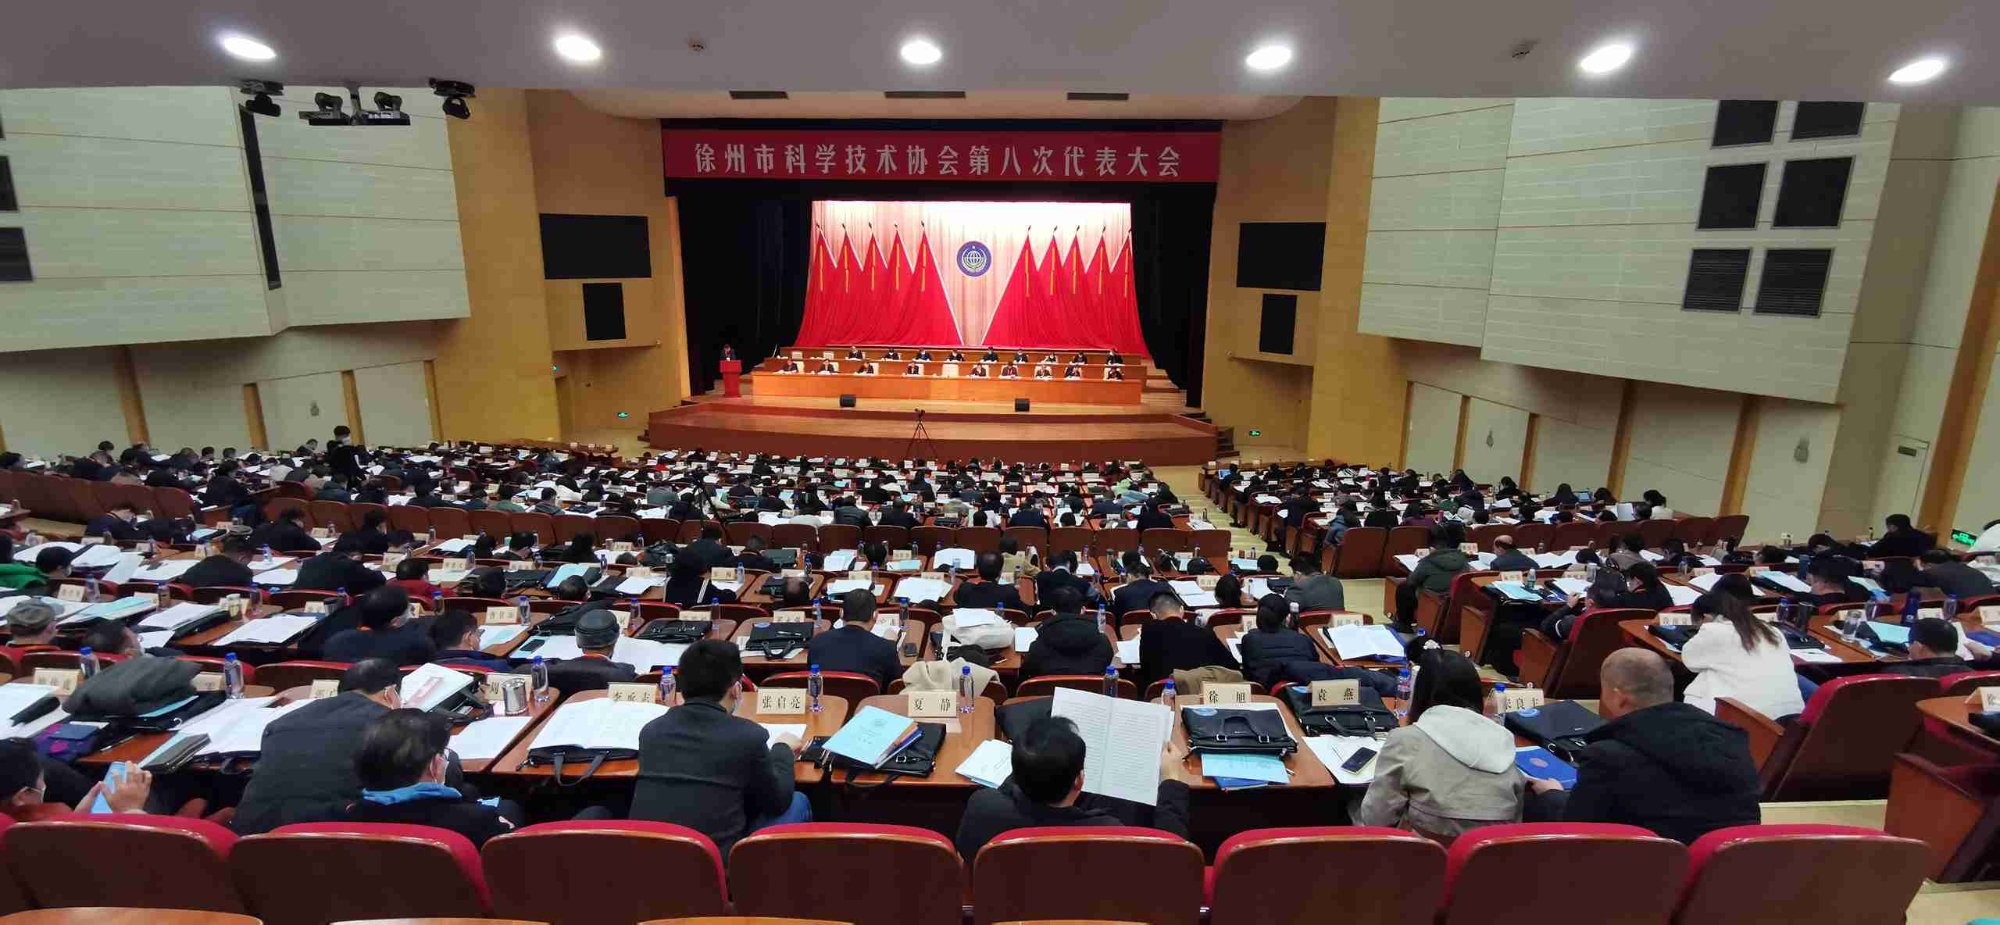 徐州市科协第八次代表大会隆重召开